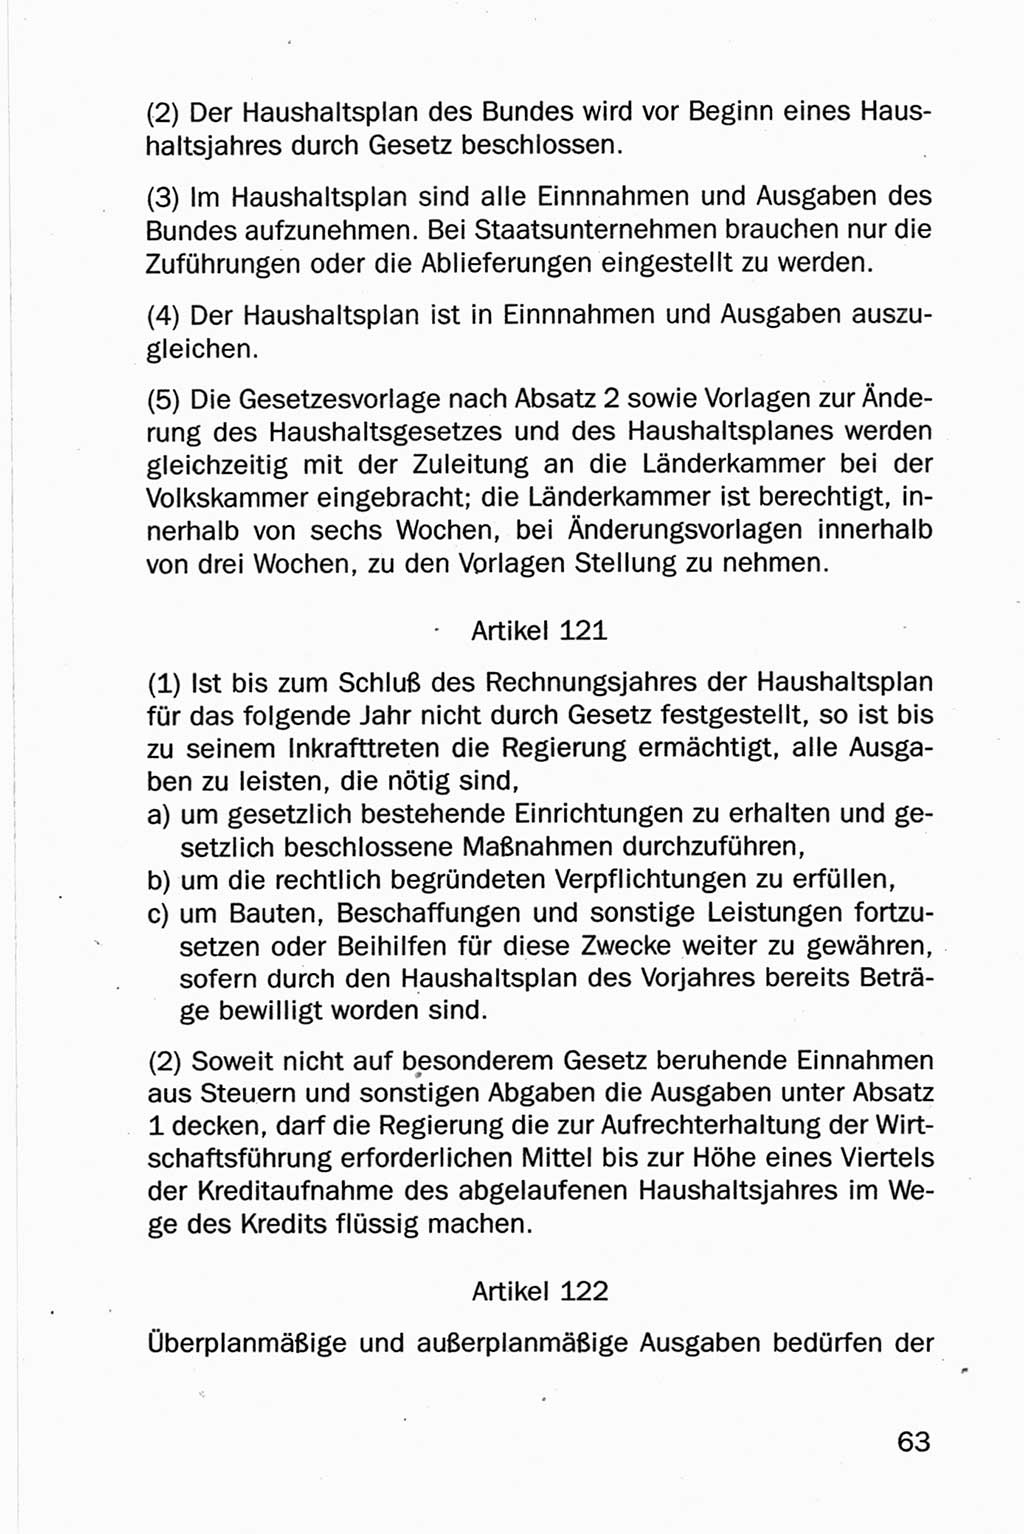 Entwurf Verfassung der Deutschen Demokratischen Republik (DDR), Arbeitsgruppe "Neue Verfassung der DDR" des Runden Tisches, Berlin 1990, Seite 63 (Entw. Verf. DDR 1990, S. 63)